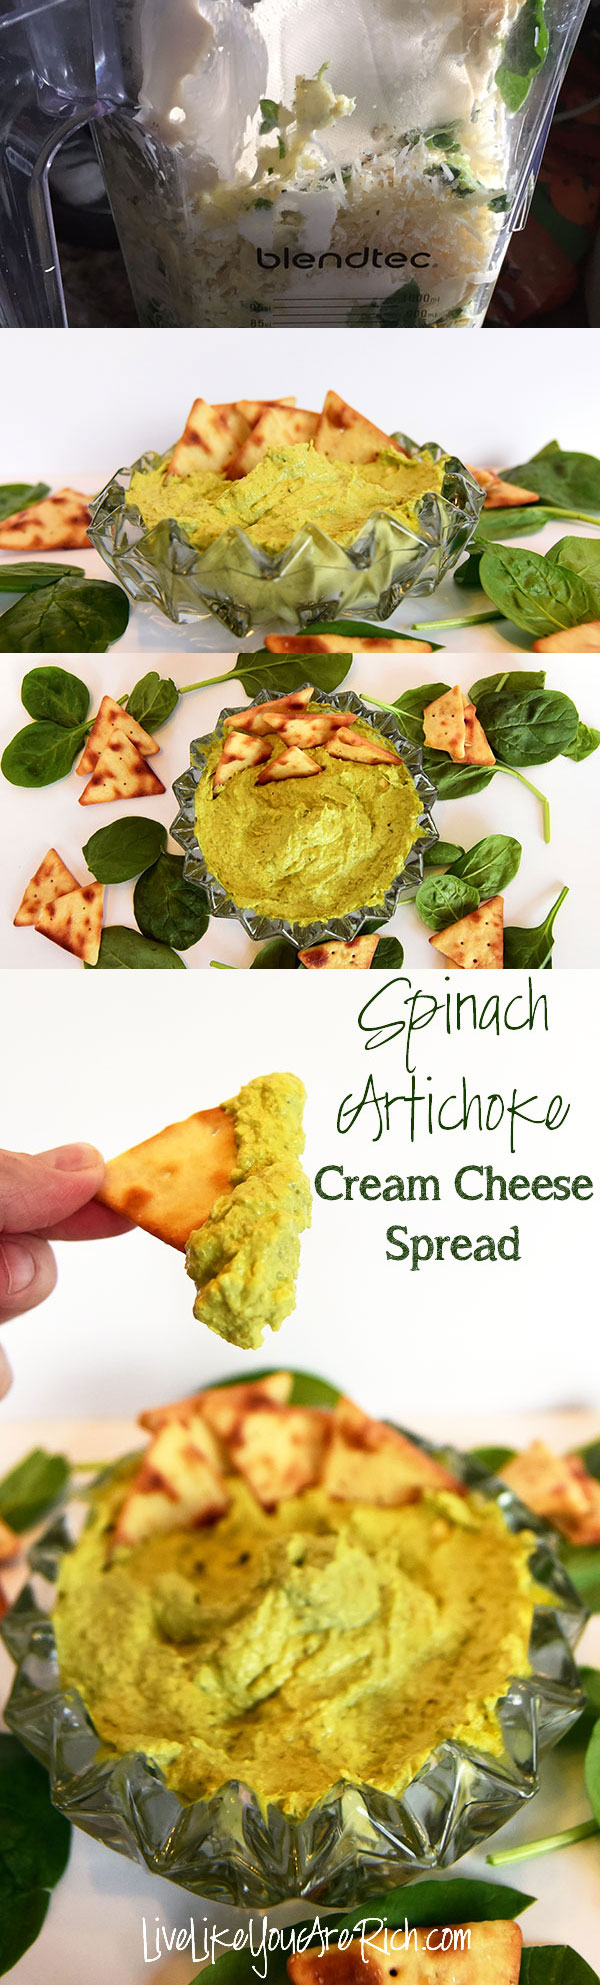 Spinach Artichoke Cream Cheese Spread